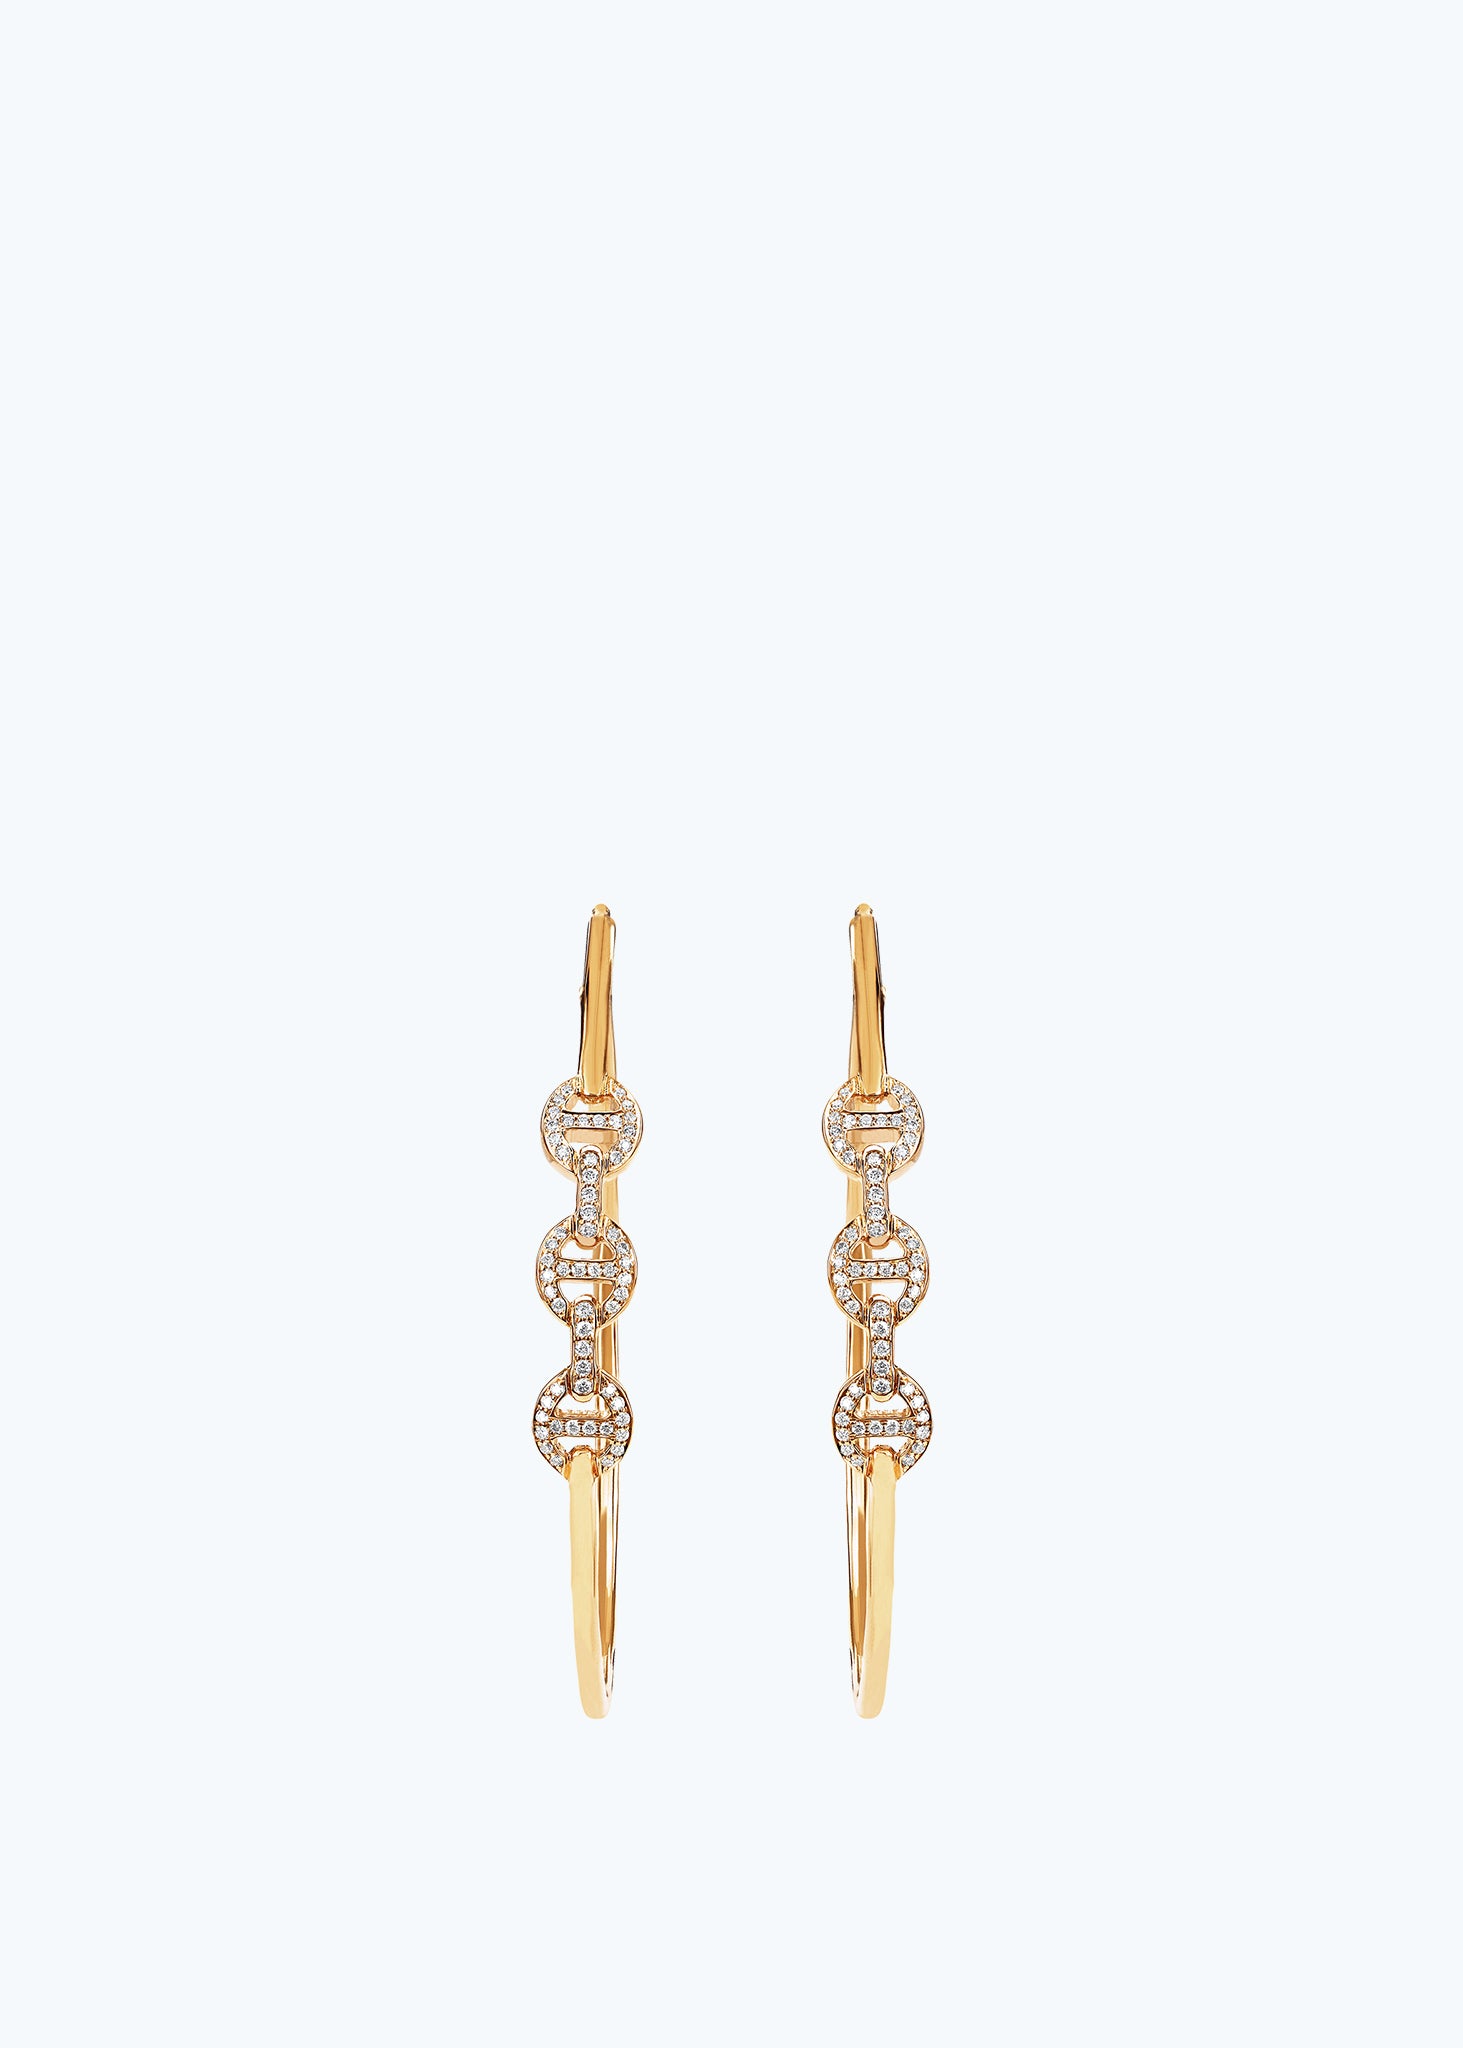 18k Yellow Gold Hoop Earrings with Diamonds